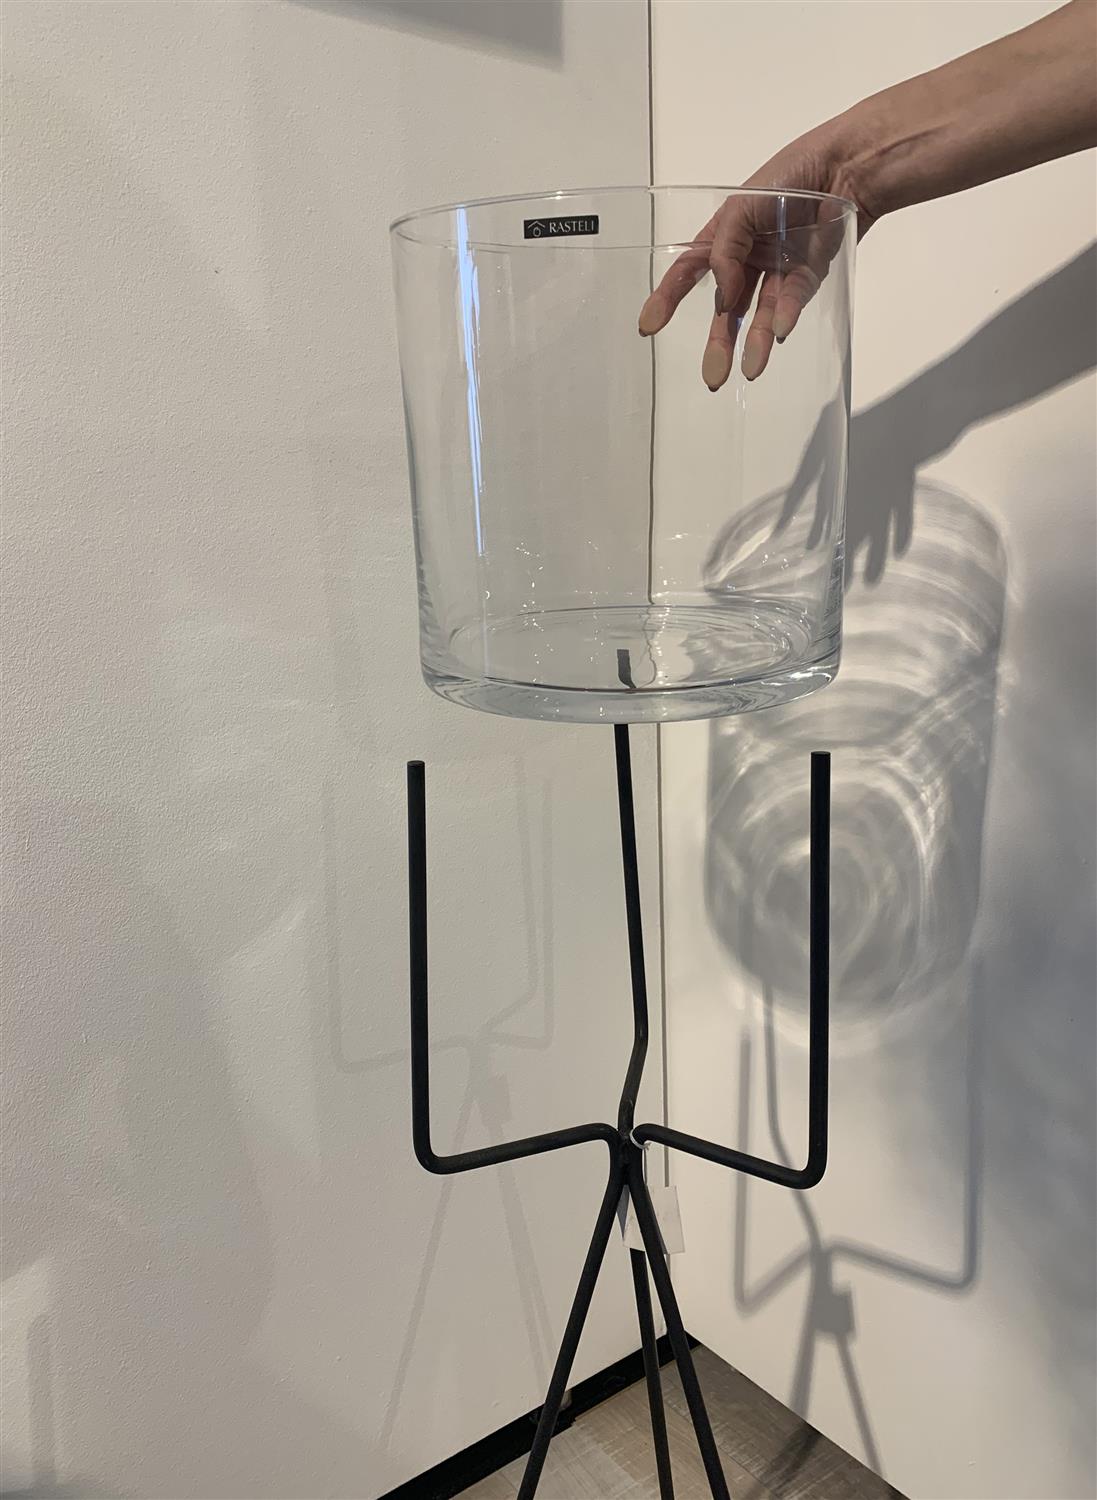 Cilindri - Glass Vase & Iron Holder